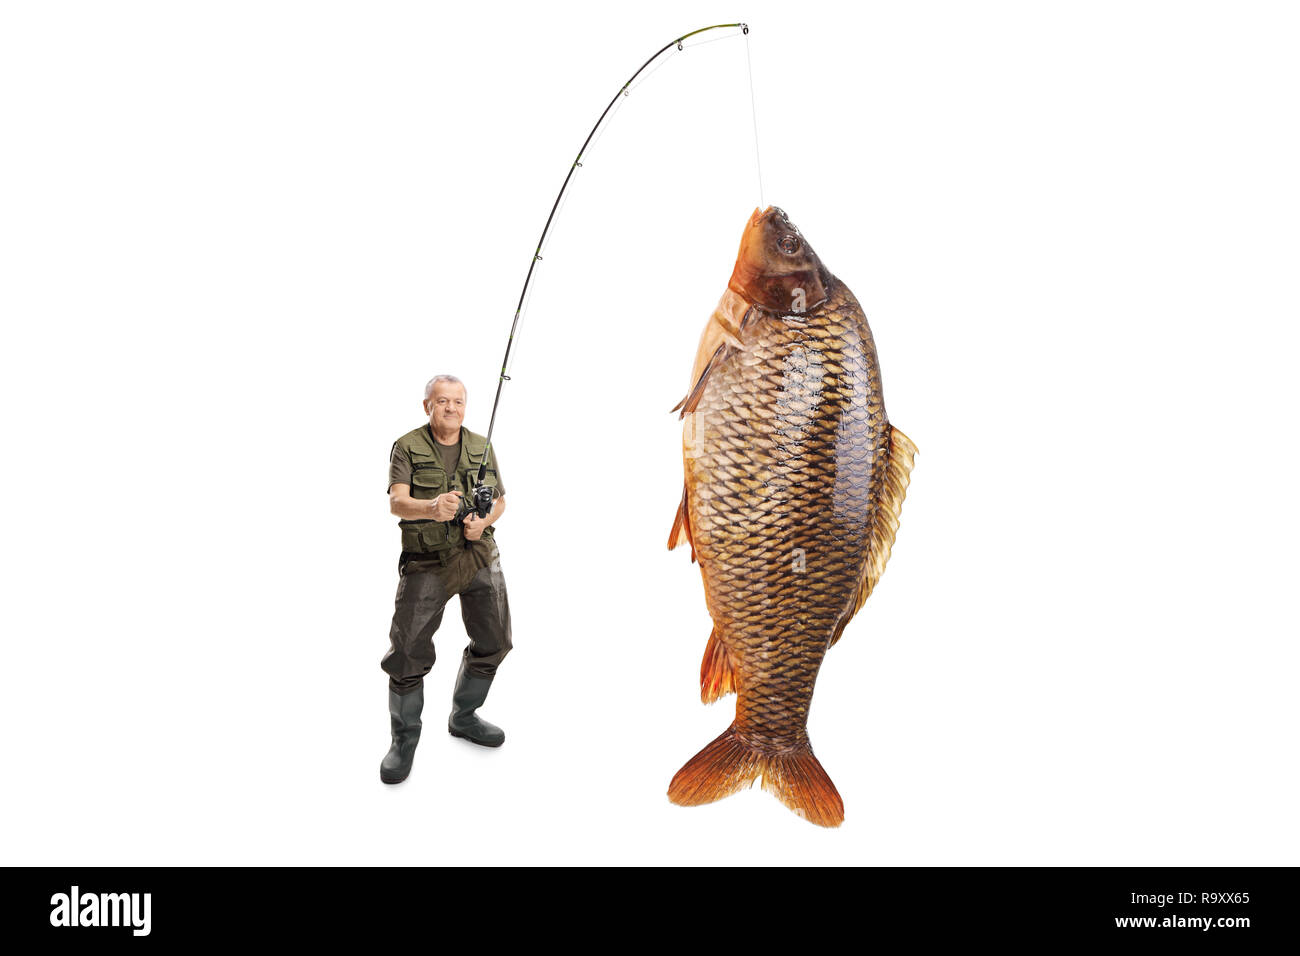 Portrait d'un pêcheur avec une carpe poisson sur une canne à pêche isolé sur fond blanc Banque D'Images